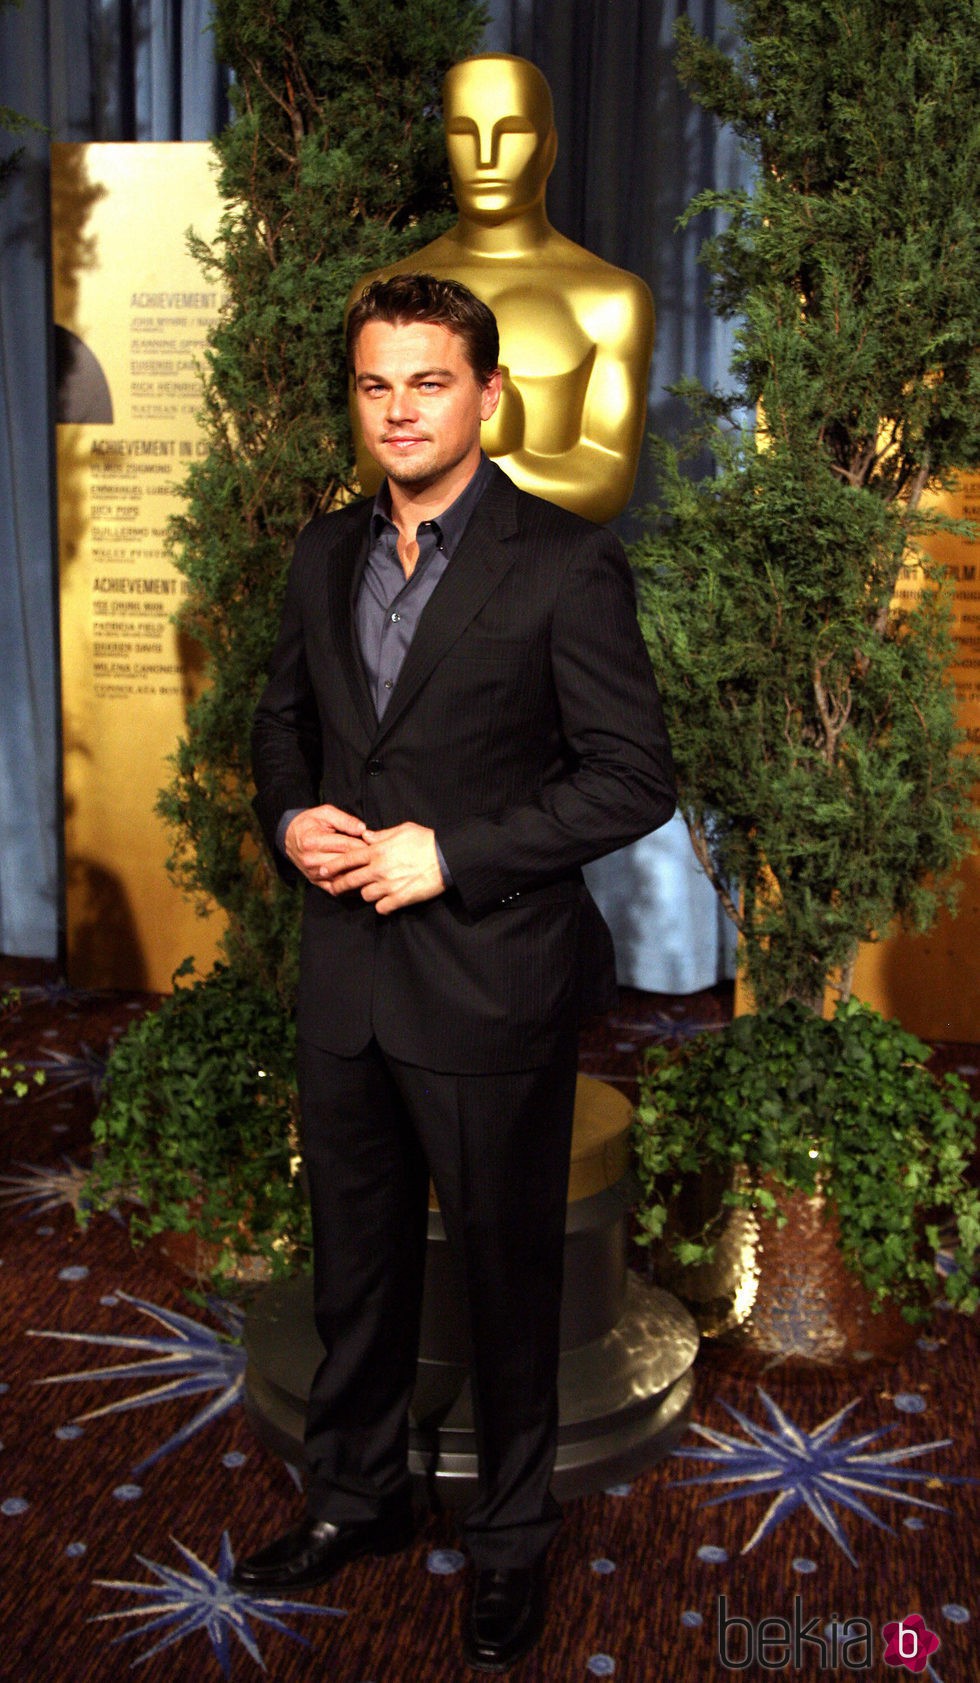 Leonardo DiCaprio en la alfombra roja de los Oscar 2007